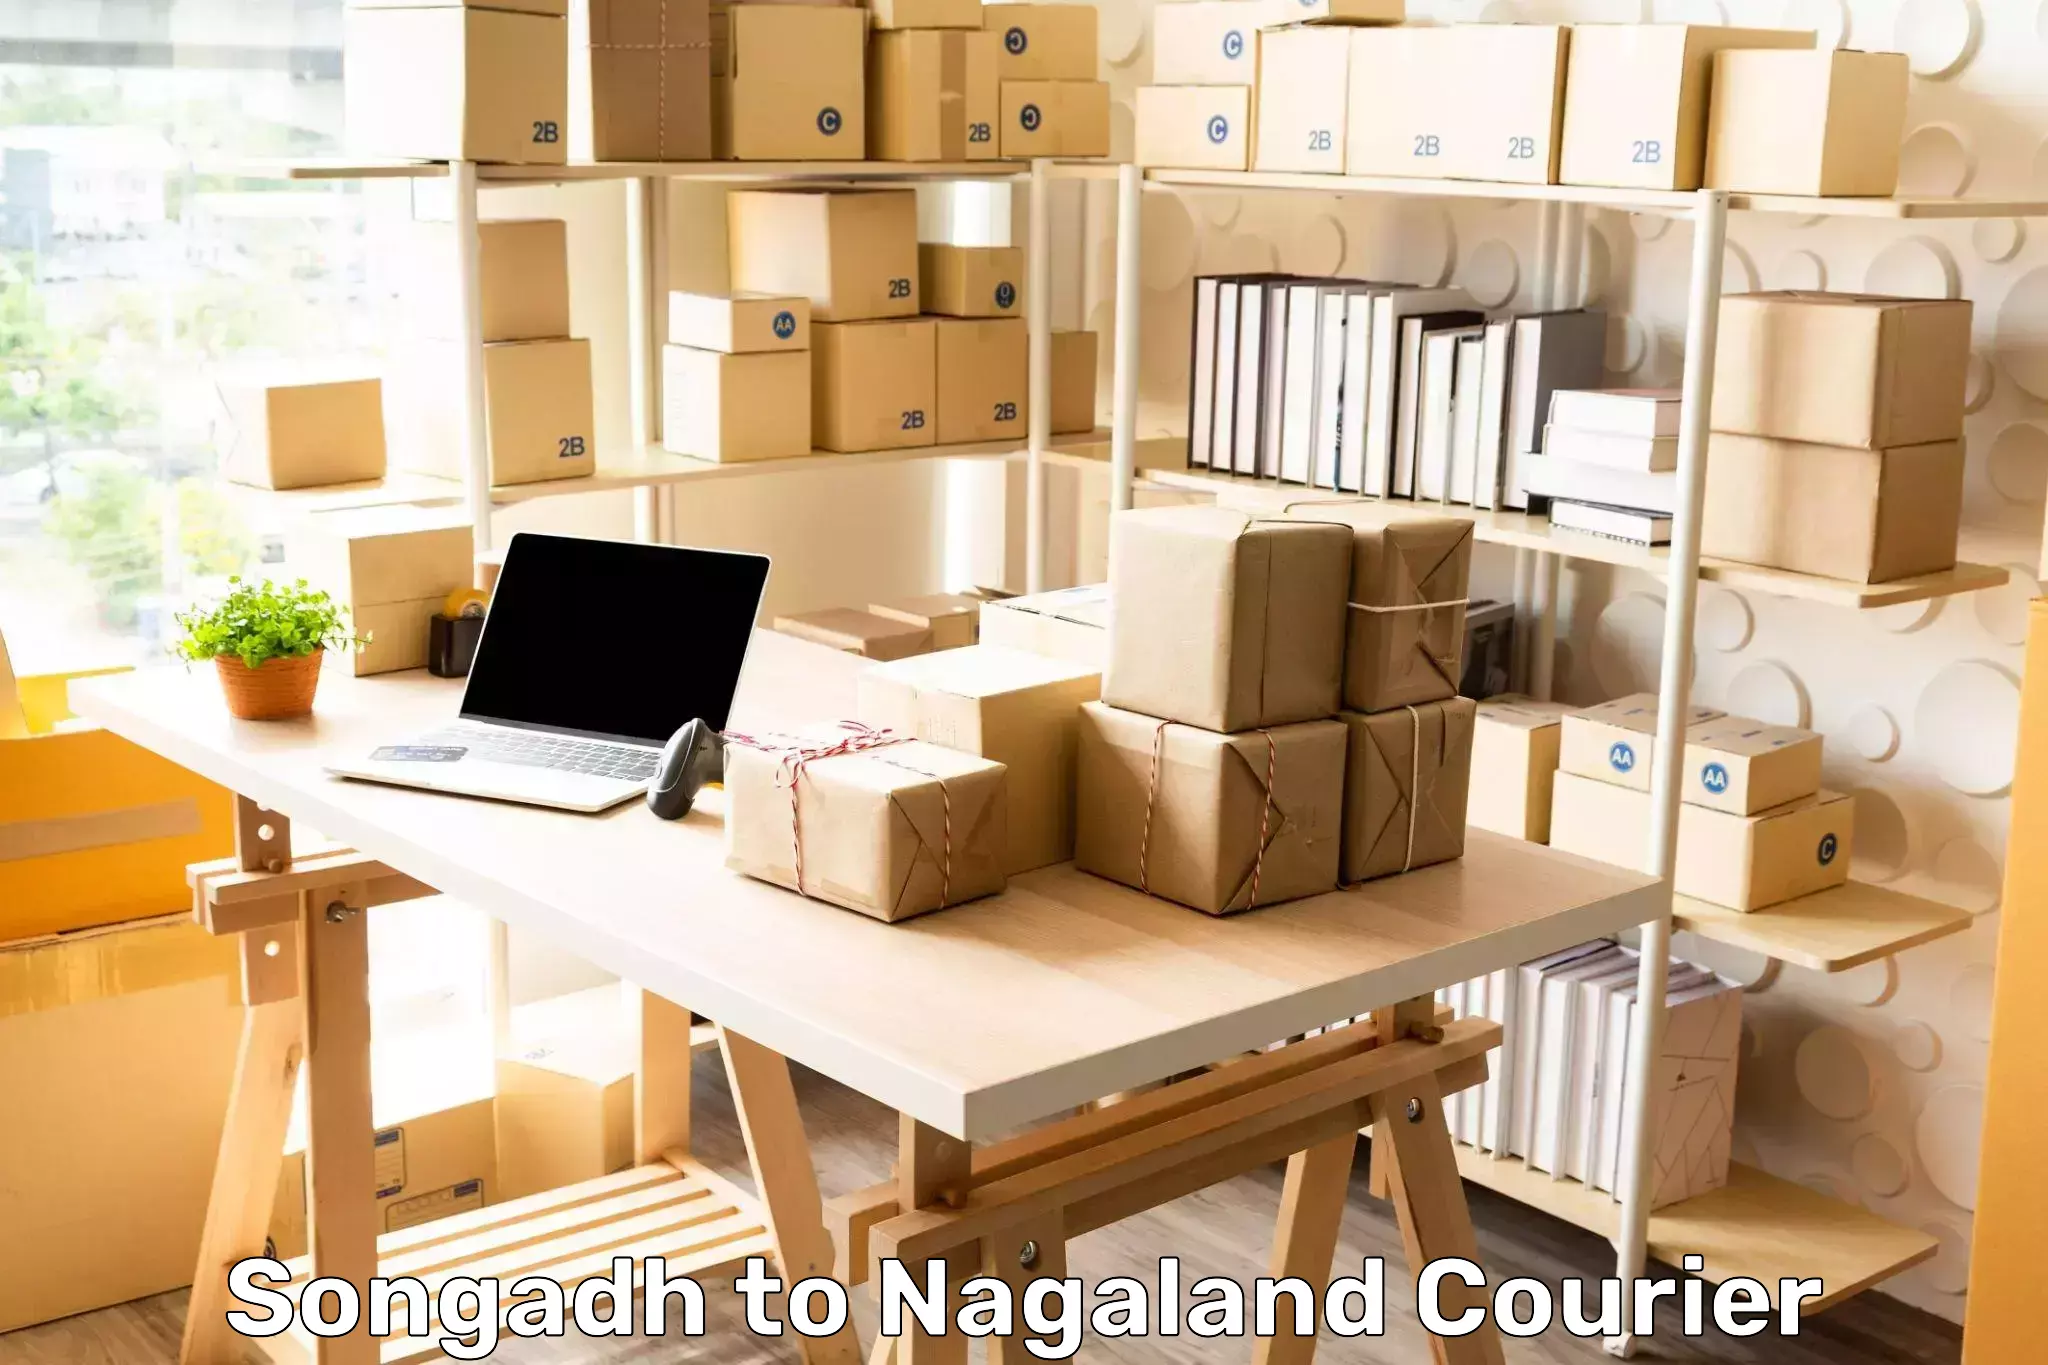 International shipping rates Songadh to NIT Nagaland